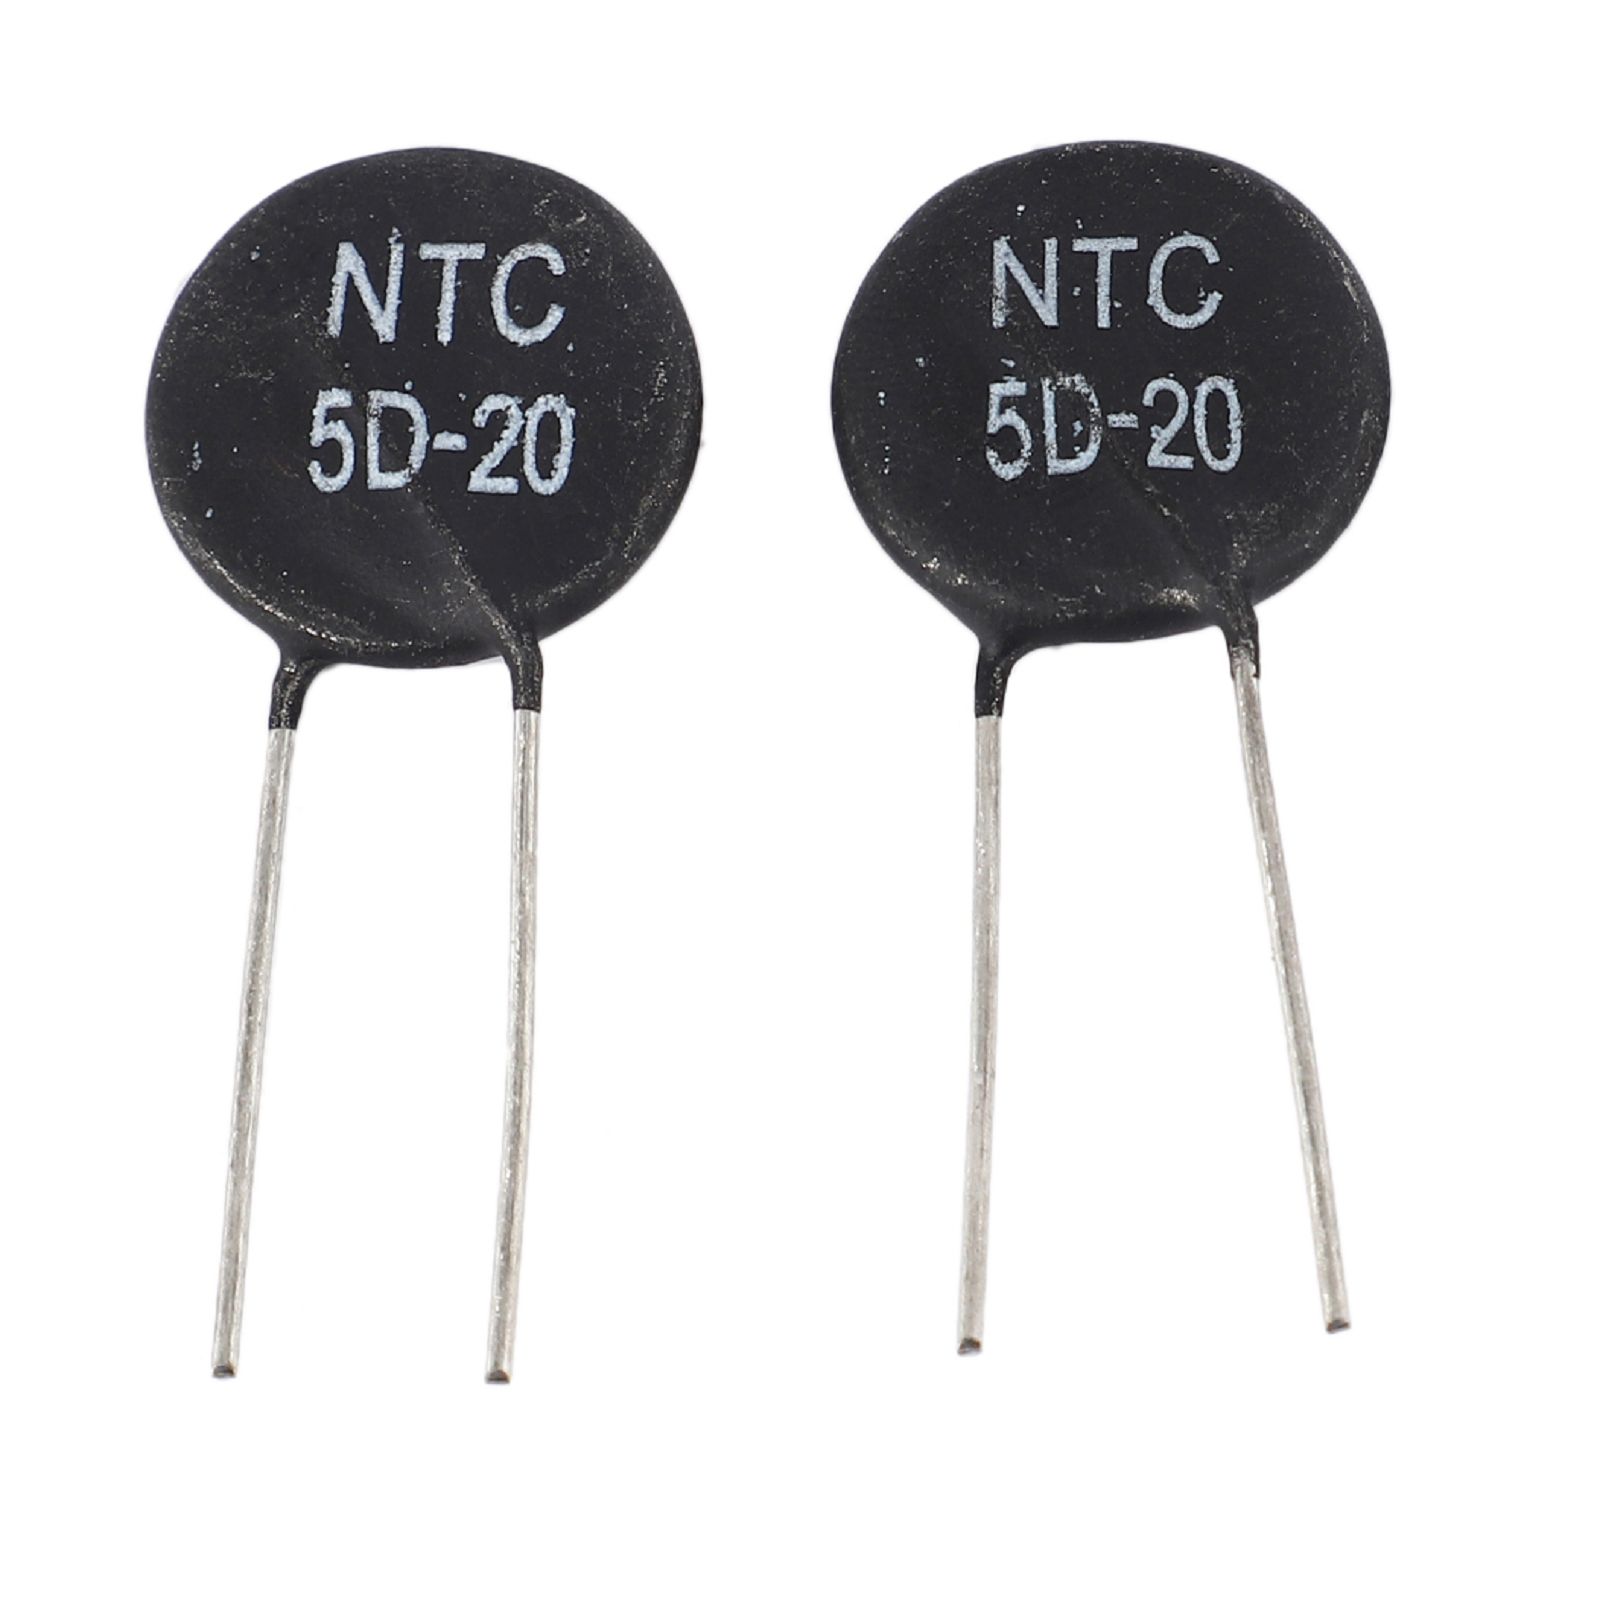 Ntc 5d 9. Варистор NTC 5d-9. Термистор NTC 5d-9. NTC 5d-7 характеристики. NTC 1960071.